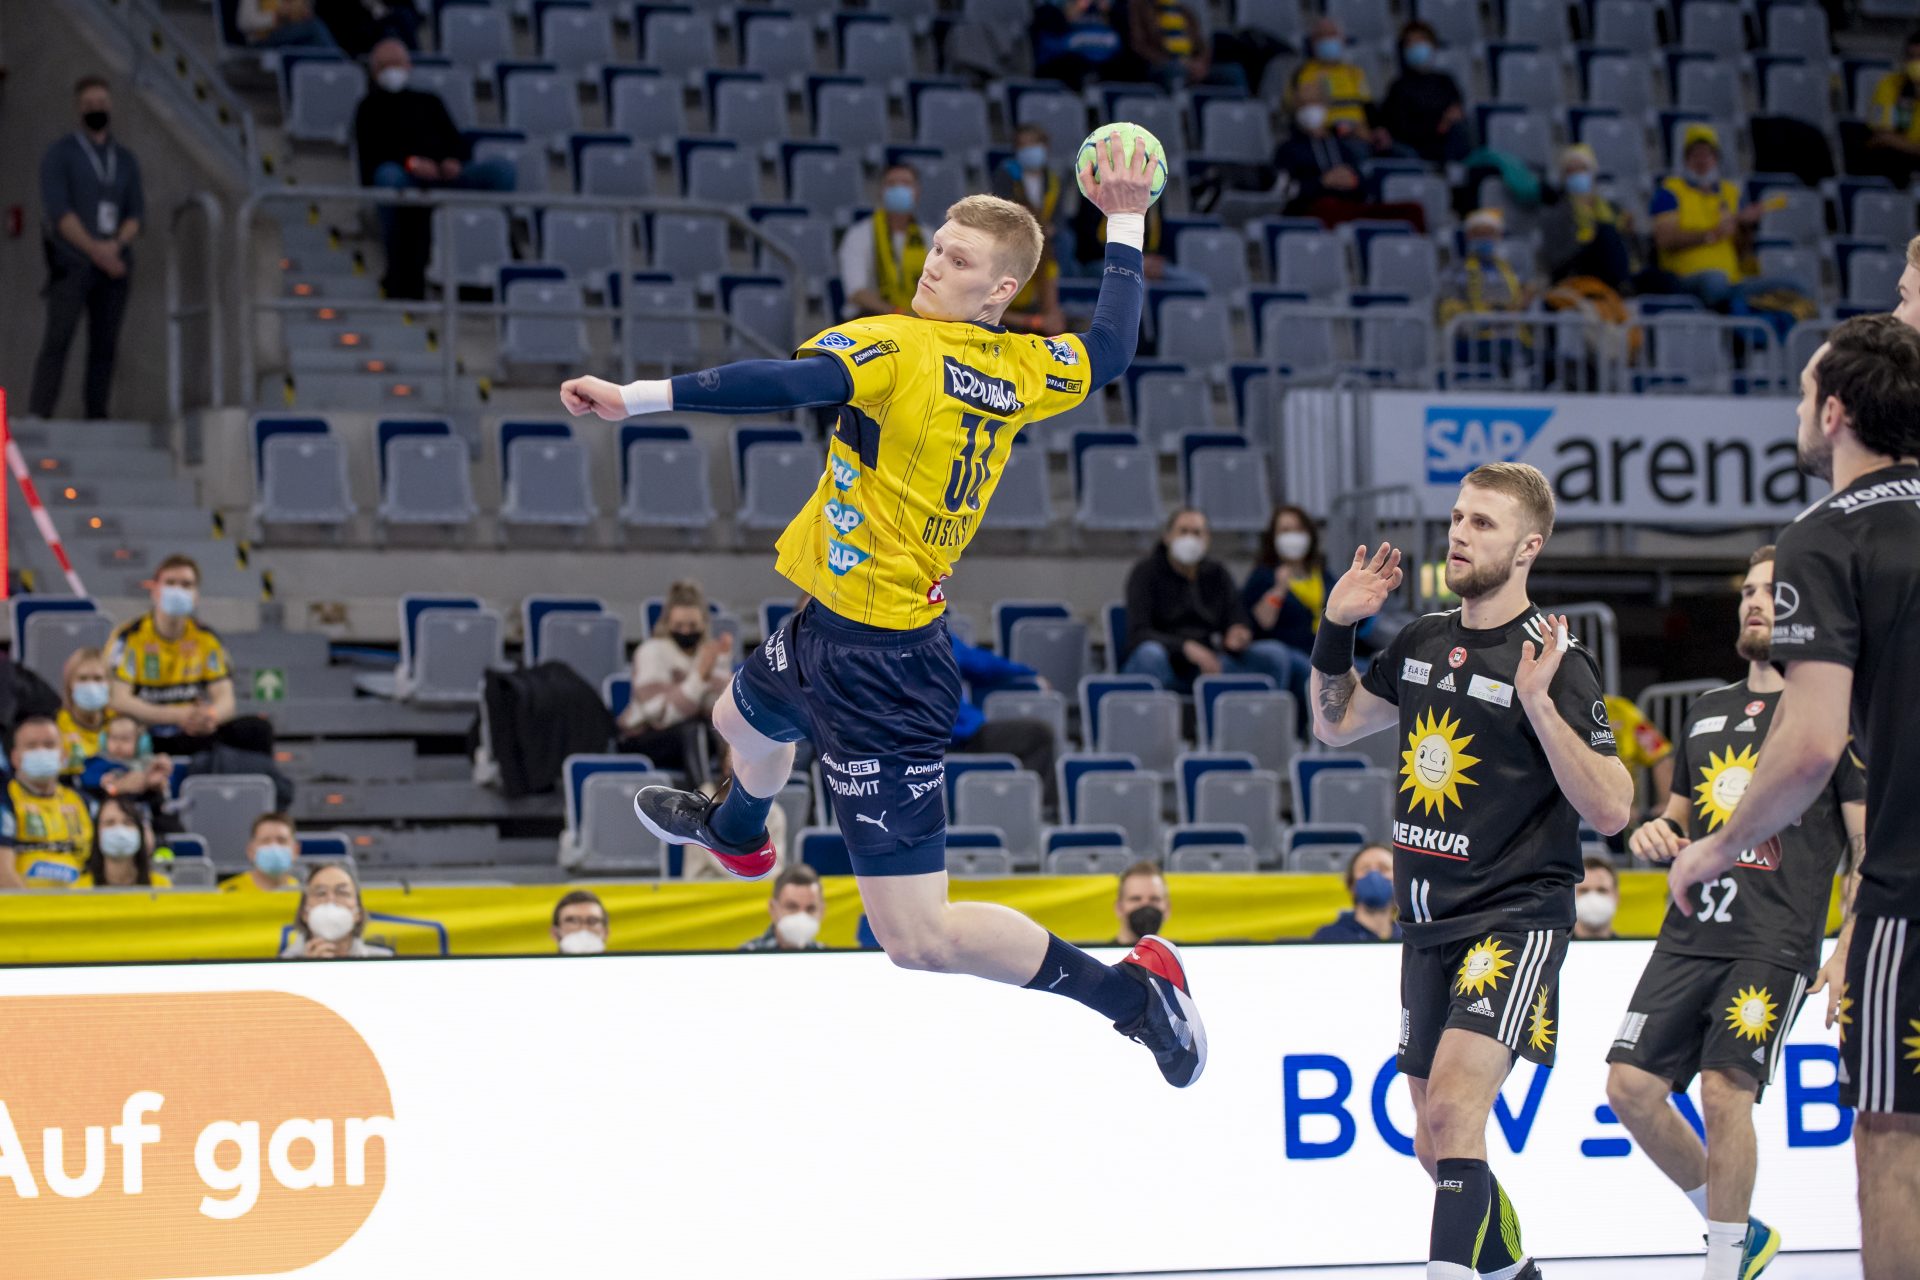 Goldene Aussichten für Löwe Lagergren: Schweden steht im Finale der EHF EURO 2022 / Für Dänemark geht es um Bronze / Island verpasst Platz 5. 